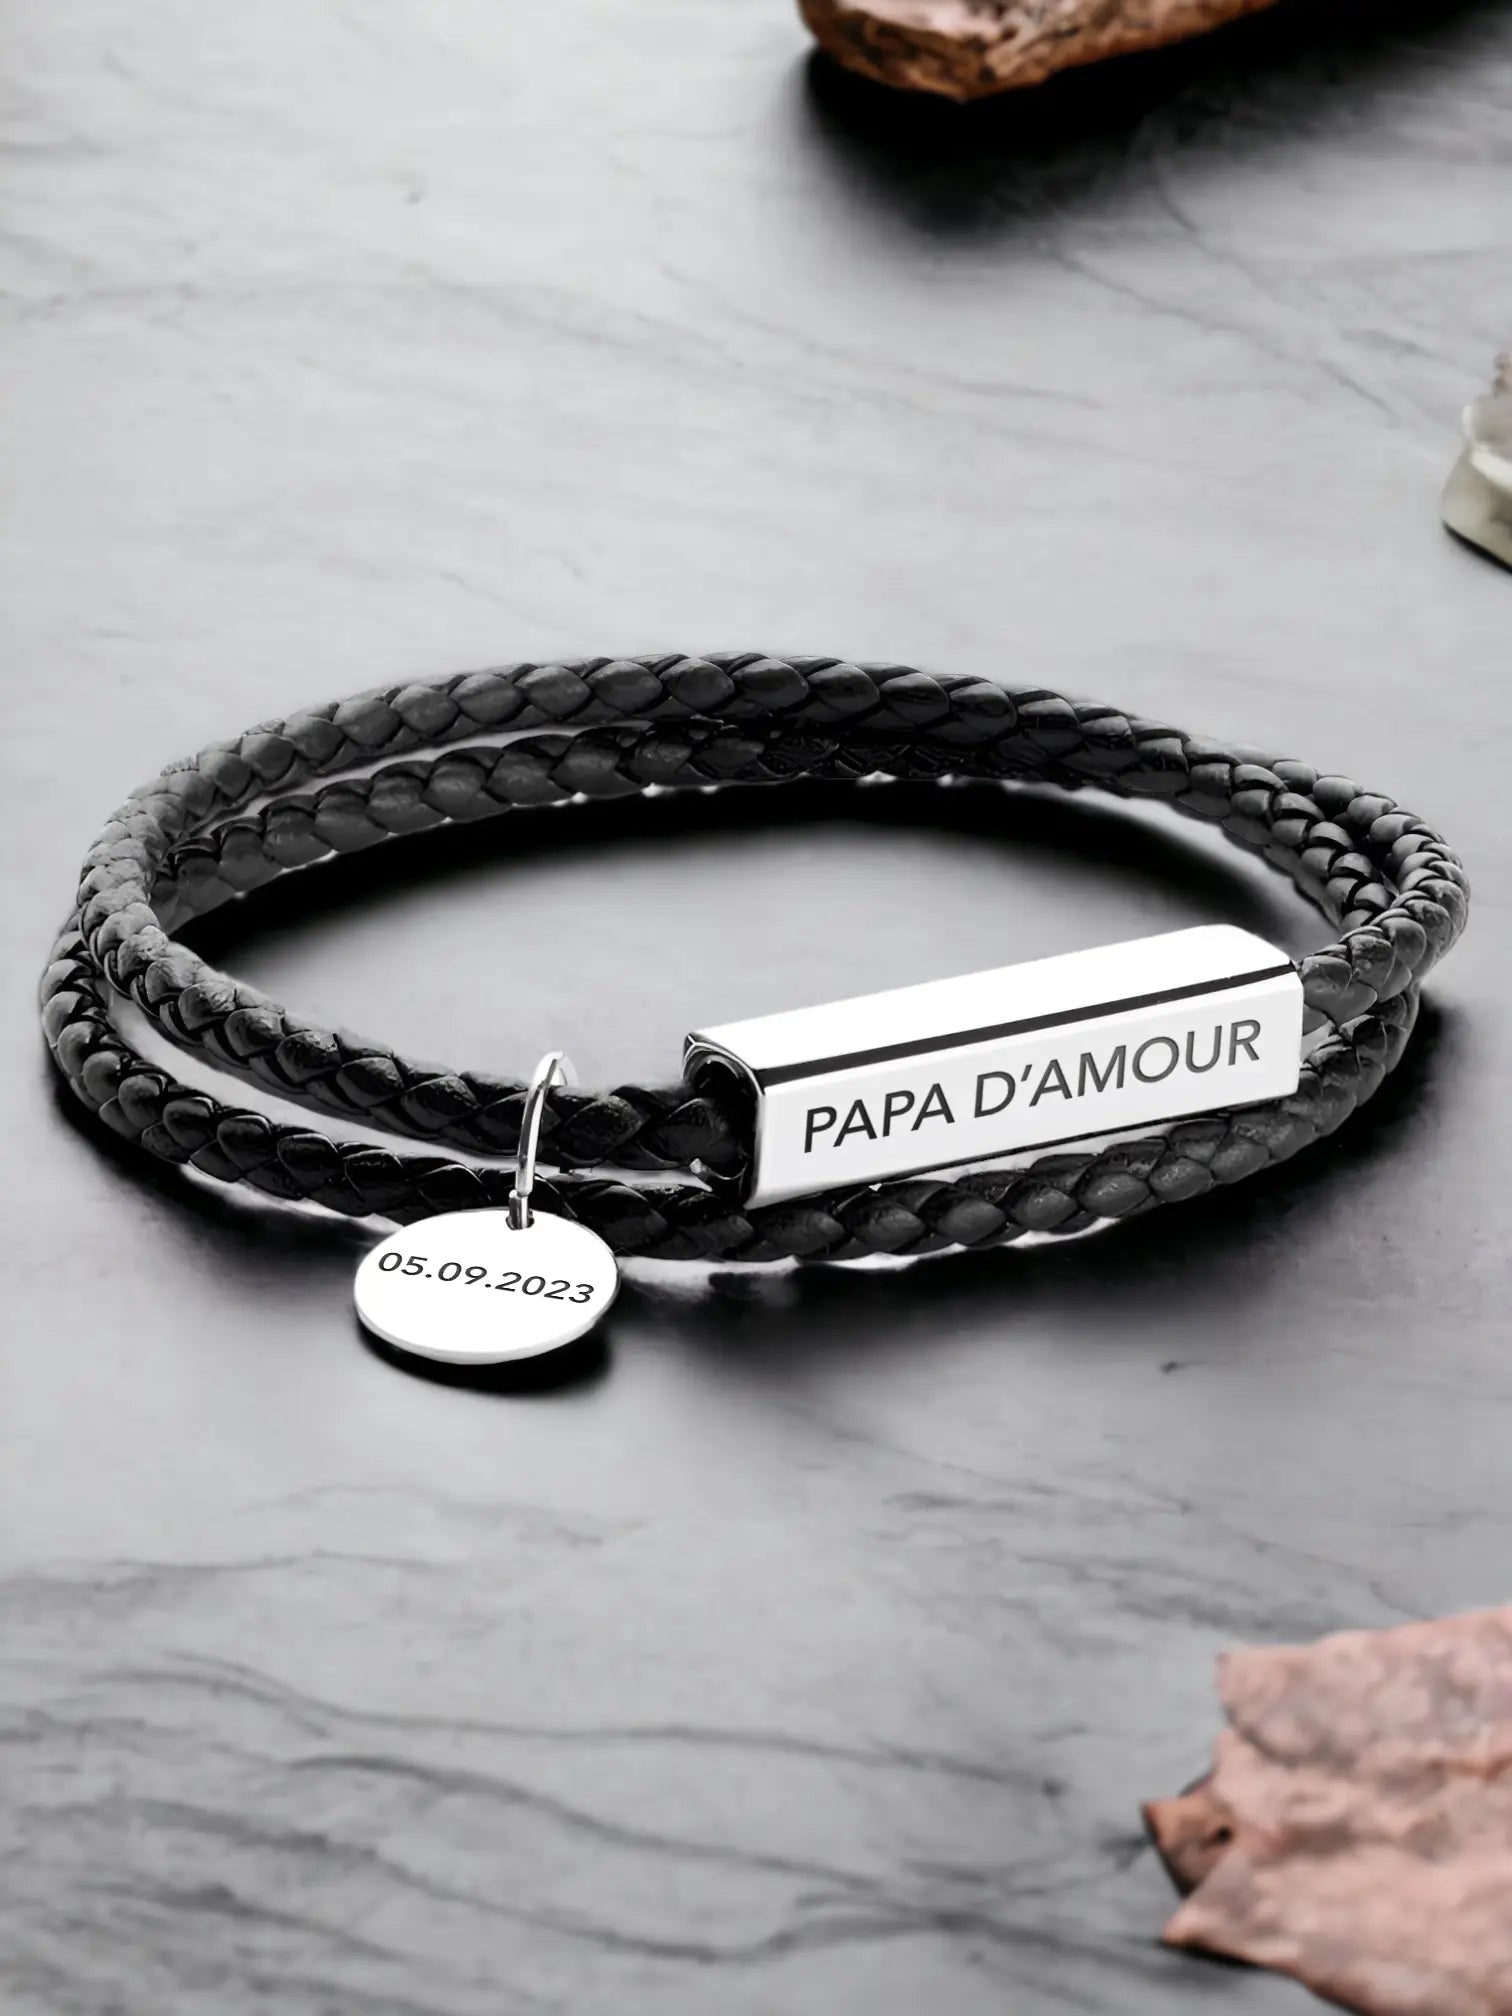 Papa d'Amour leather bracelet